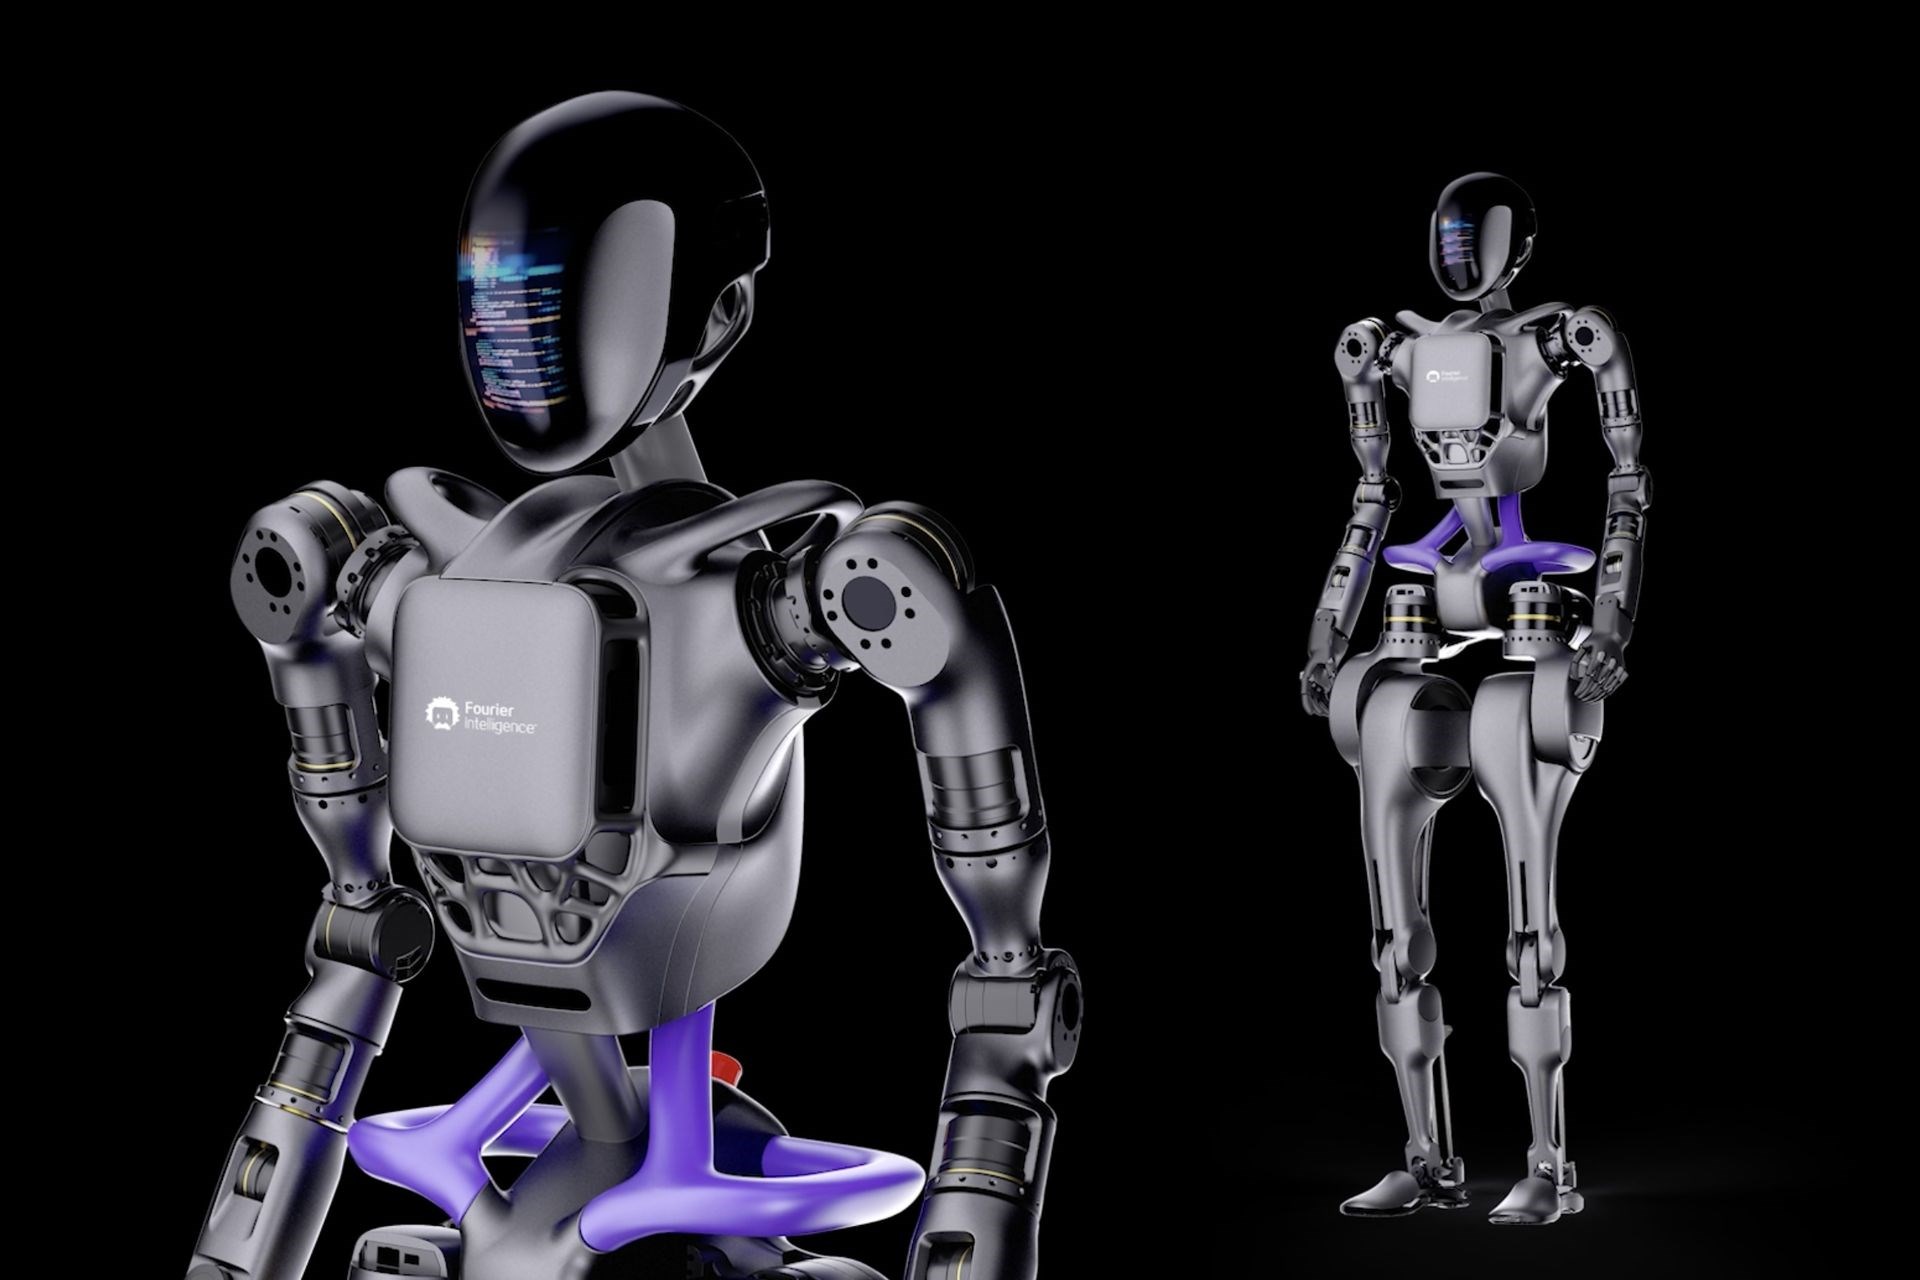 Zamanı geldi: Çin insansı robot seri üretimine başlıyor